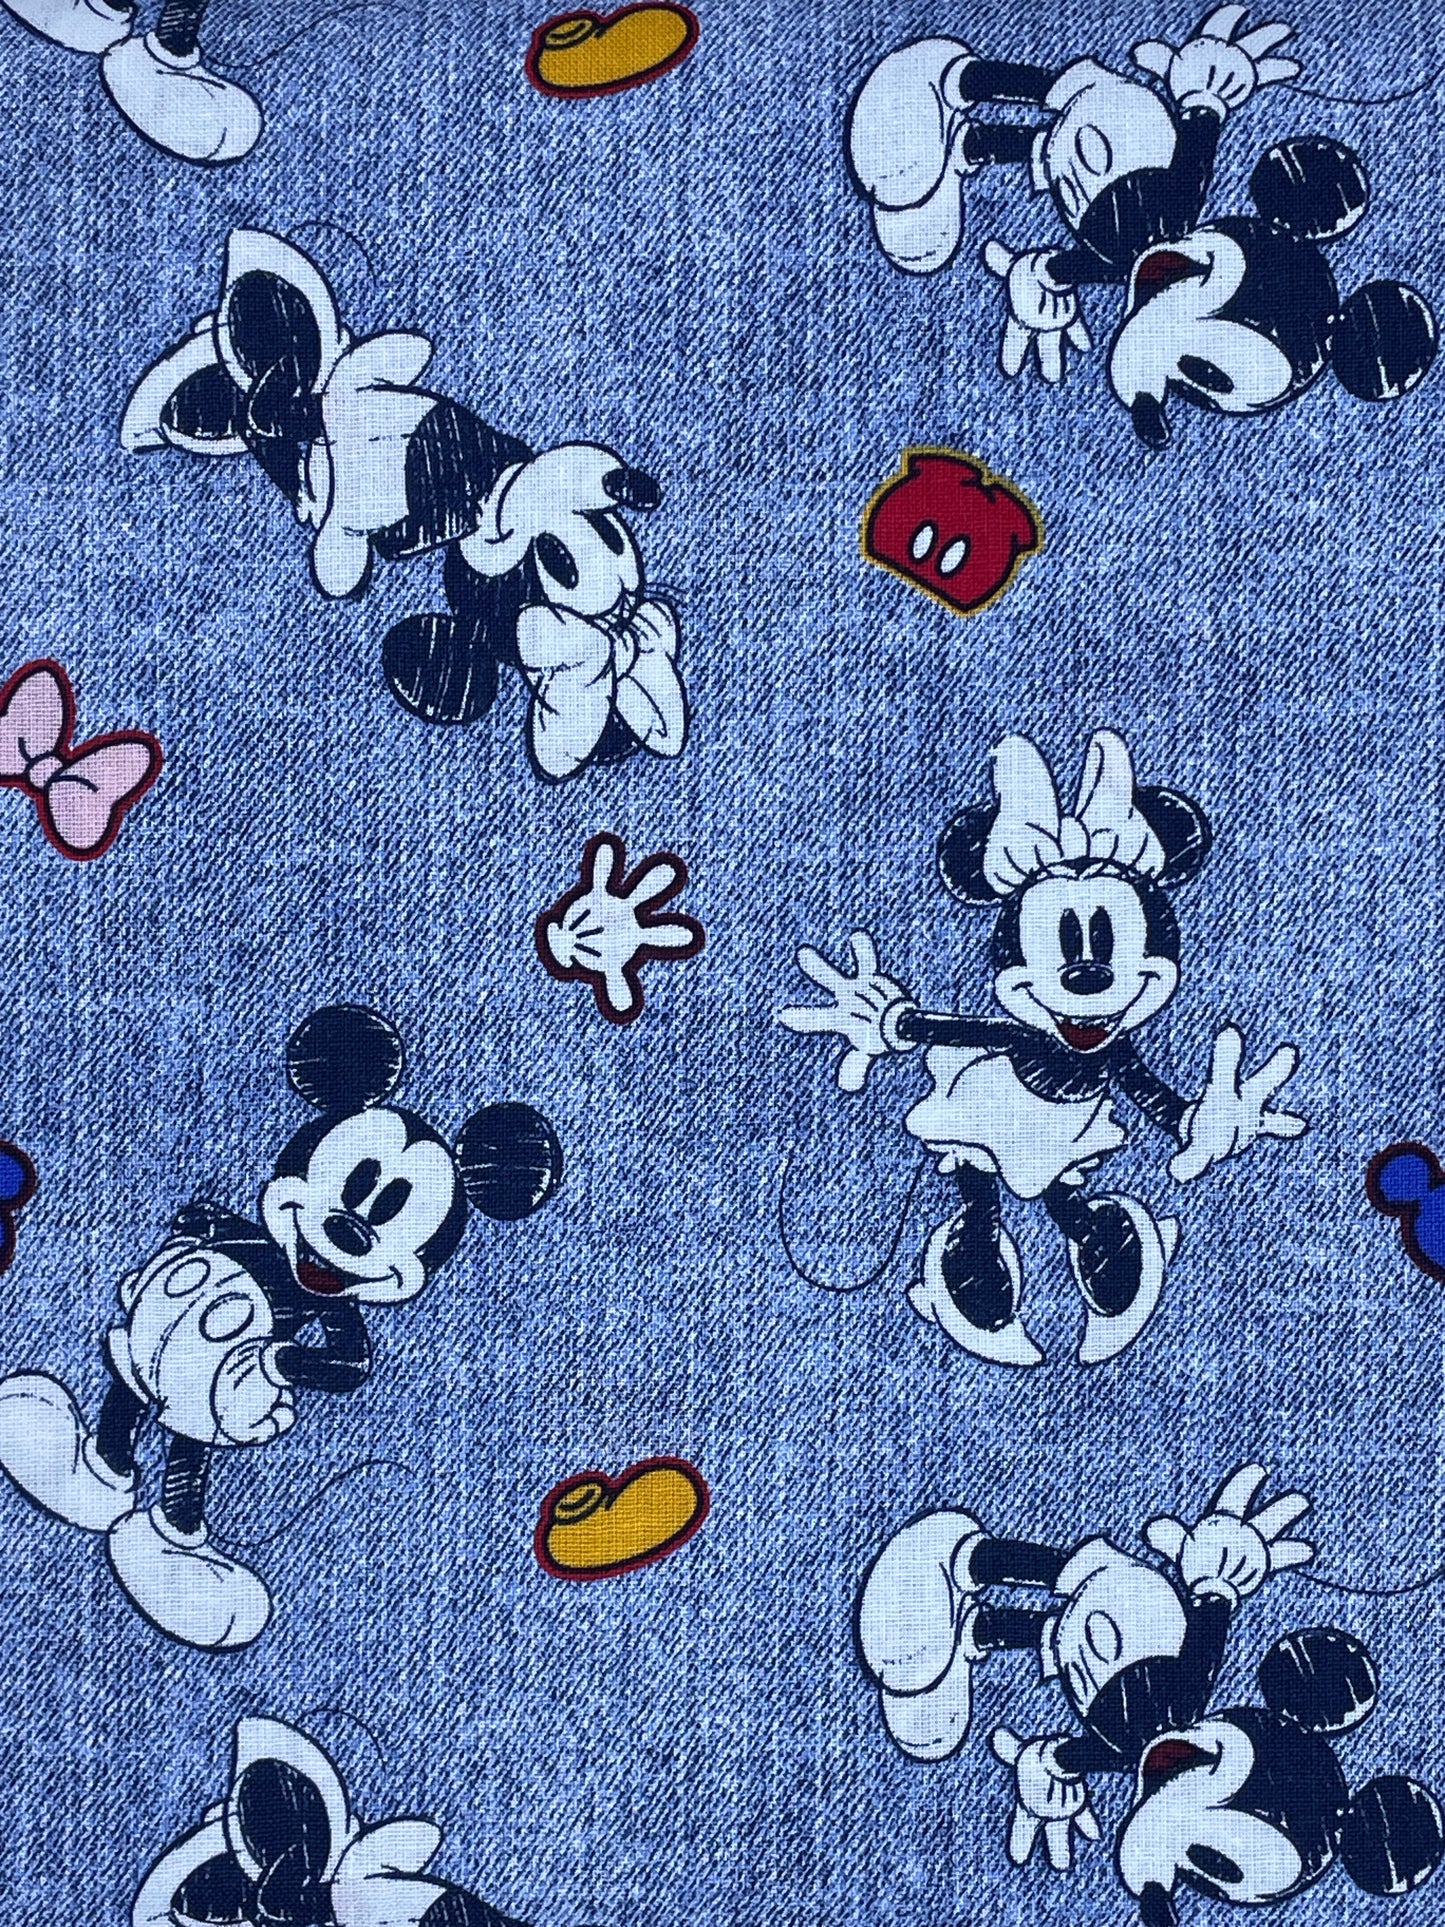 Disney Fabric Yardage